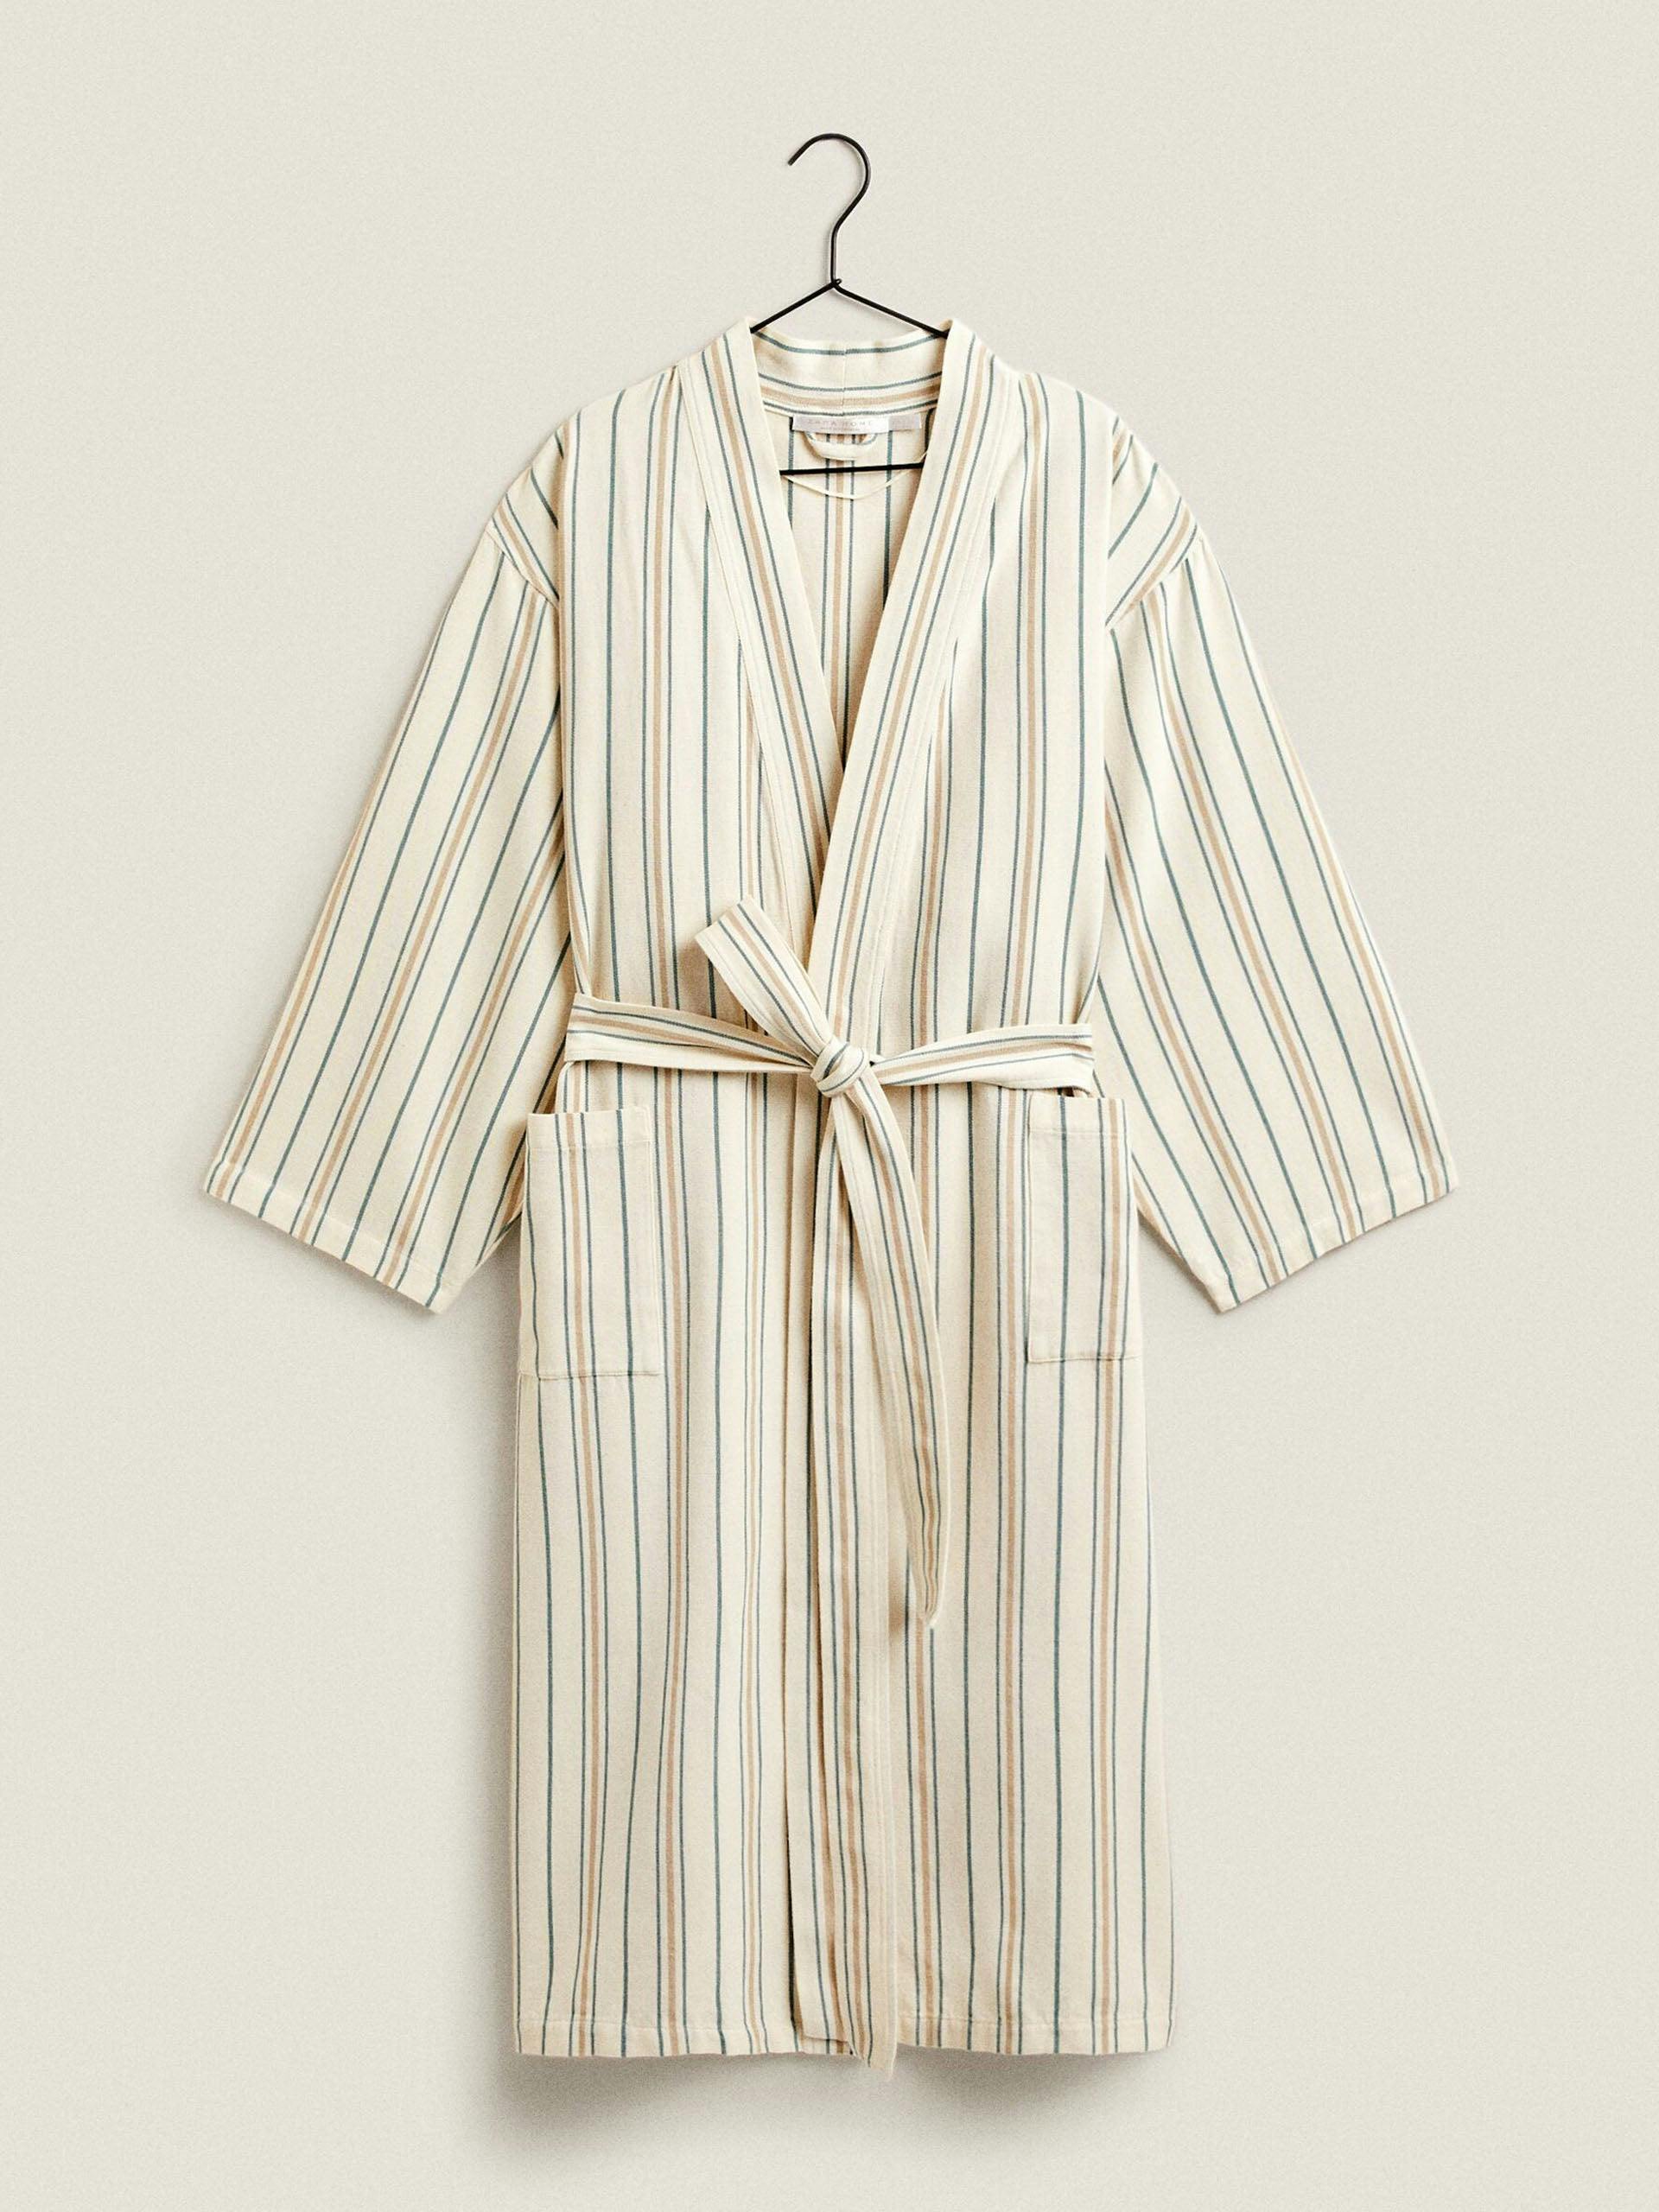 Striped cotton bathrobe